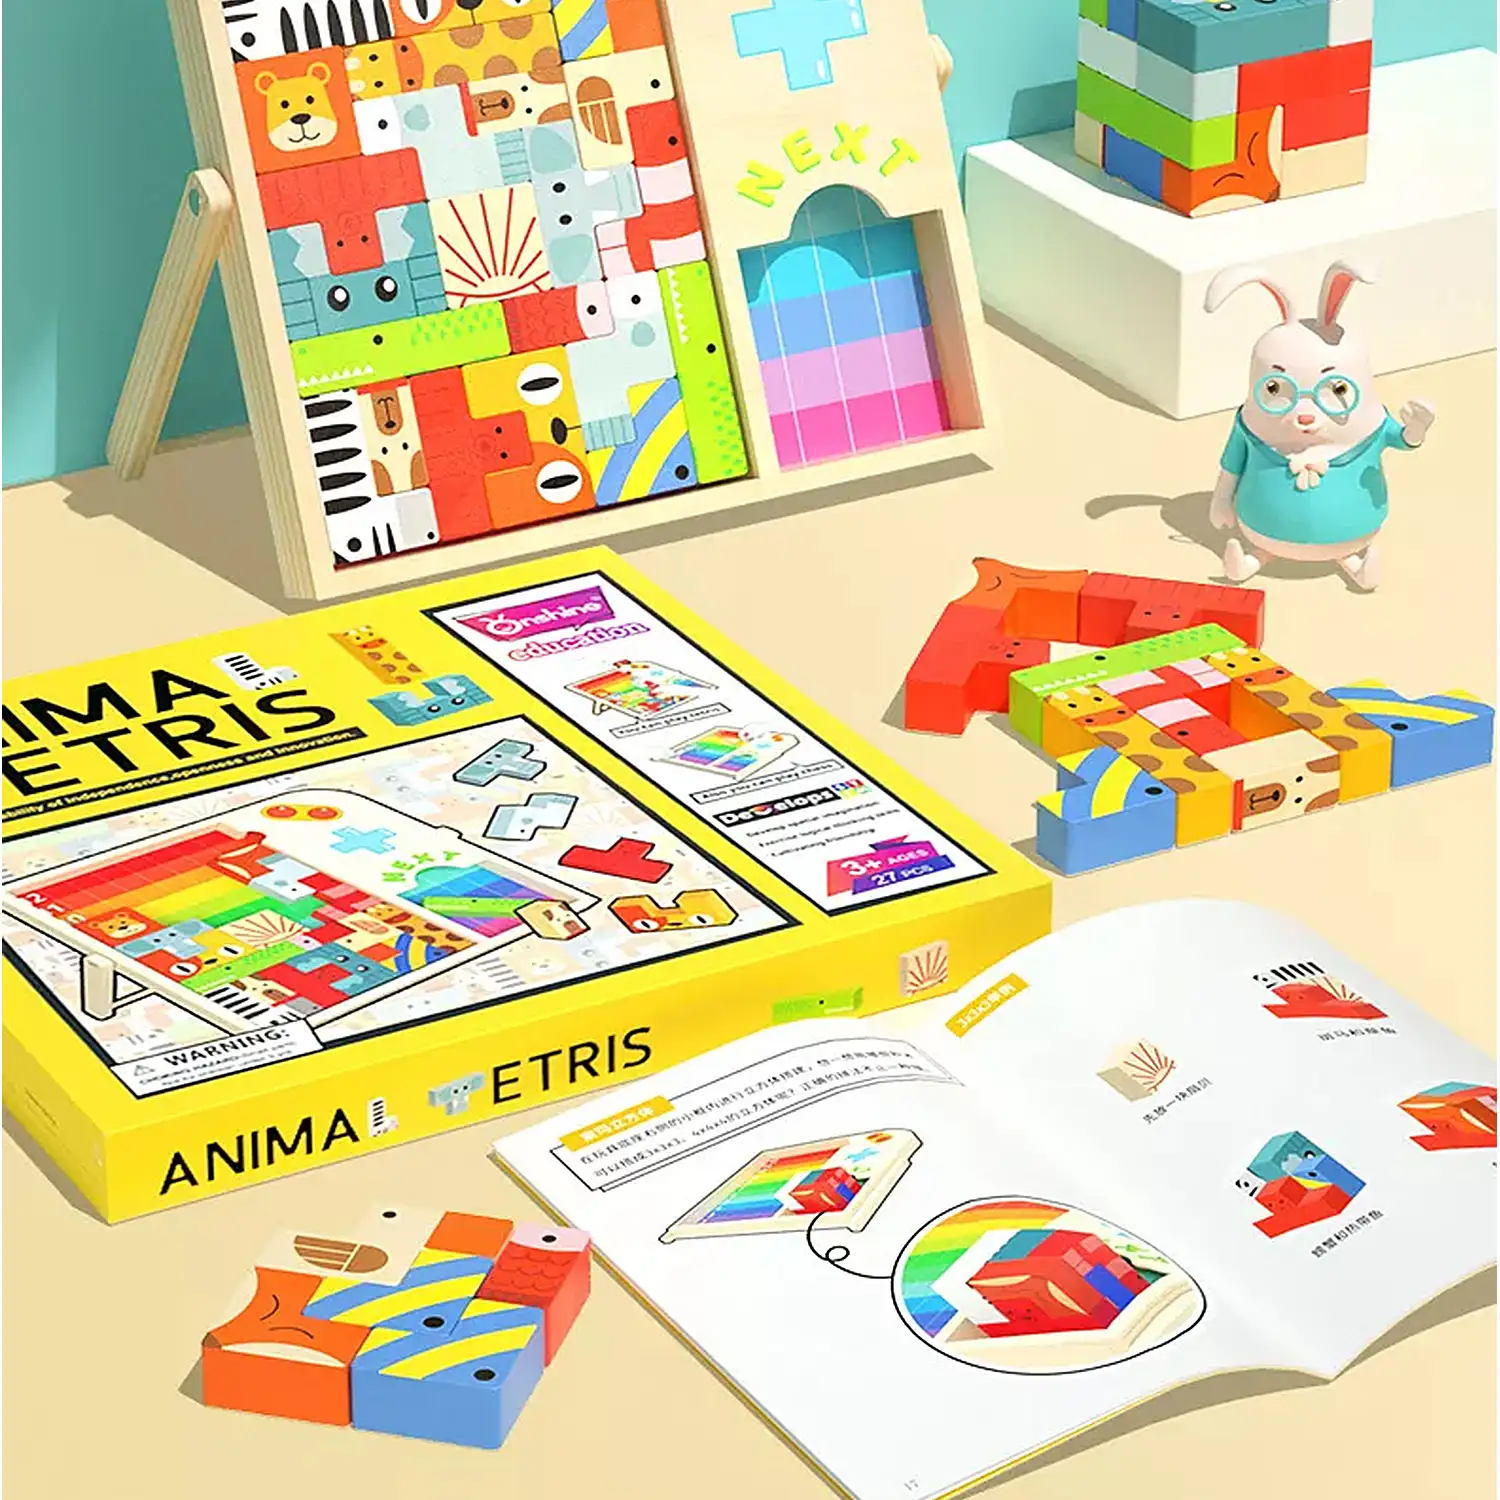 Tetris de animales para niños, con tablero y piezas de madera. Incluye cubo rompecabezas y 4 juegos para 2 jugadores.